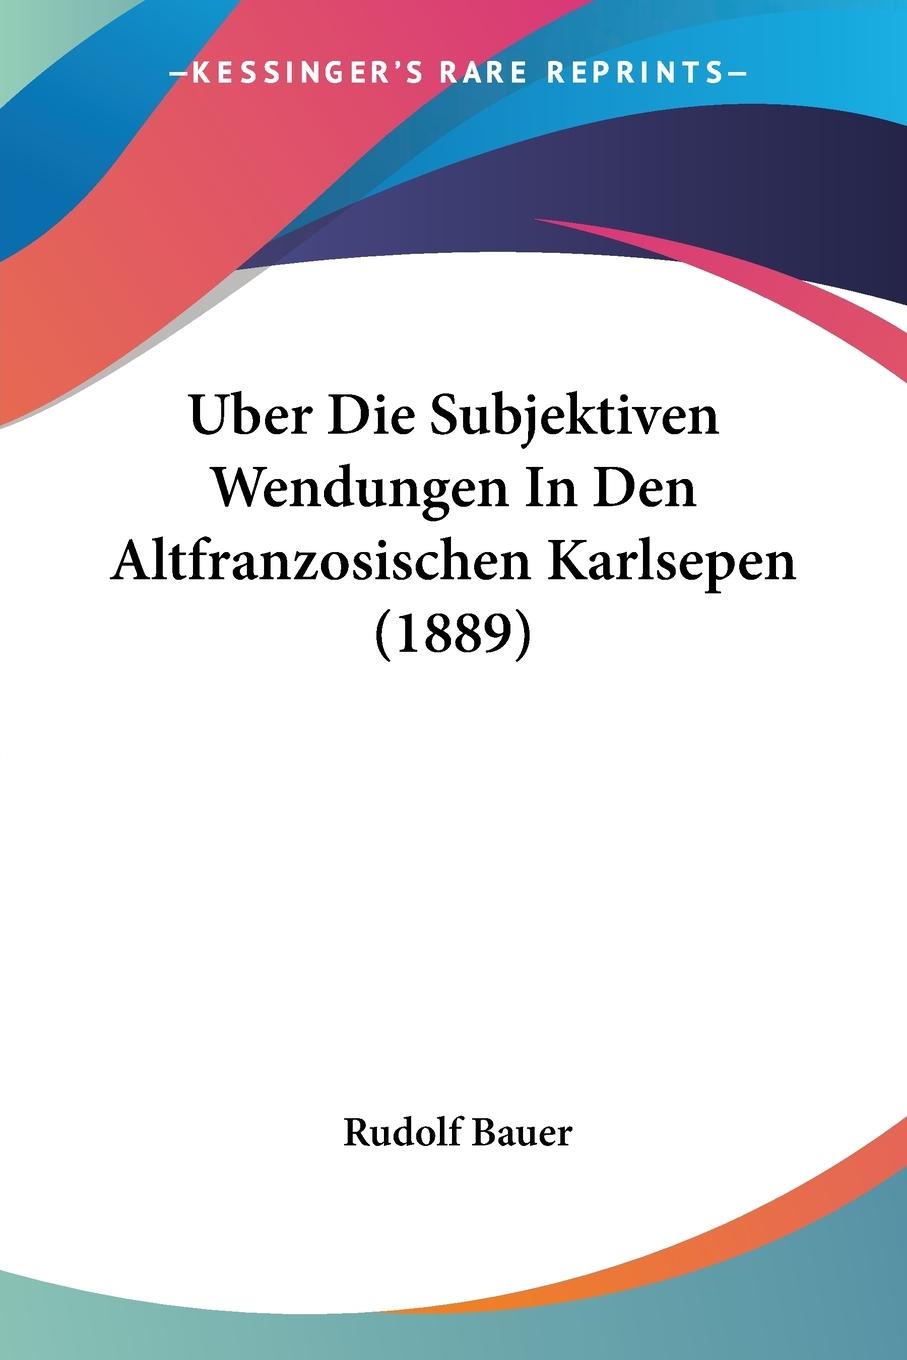 Uber Die Subjektiven Wendungen In Den Altfranzosischen Karlsepen (1889) - Bauer, Rudolf